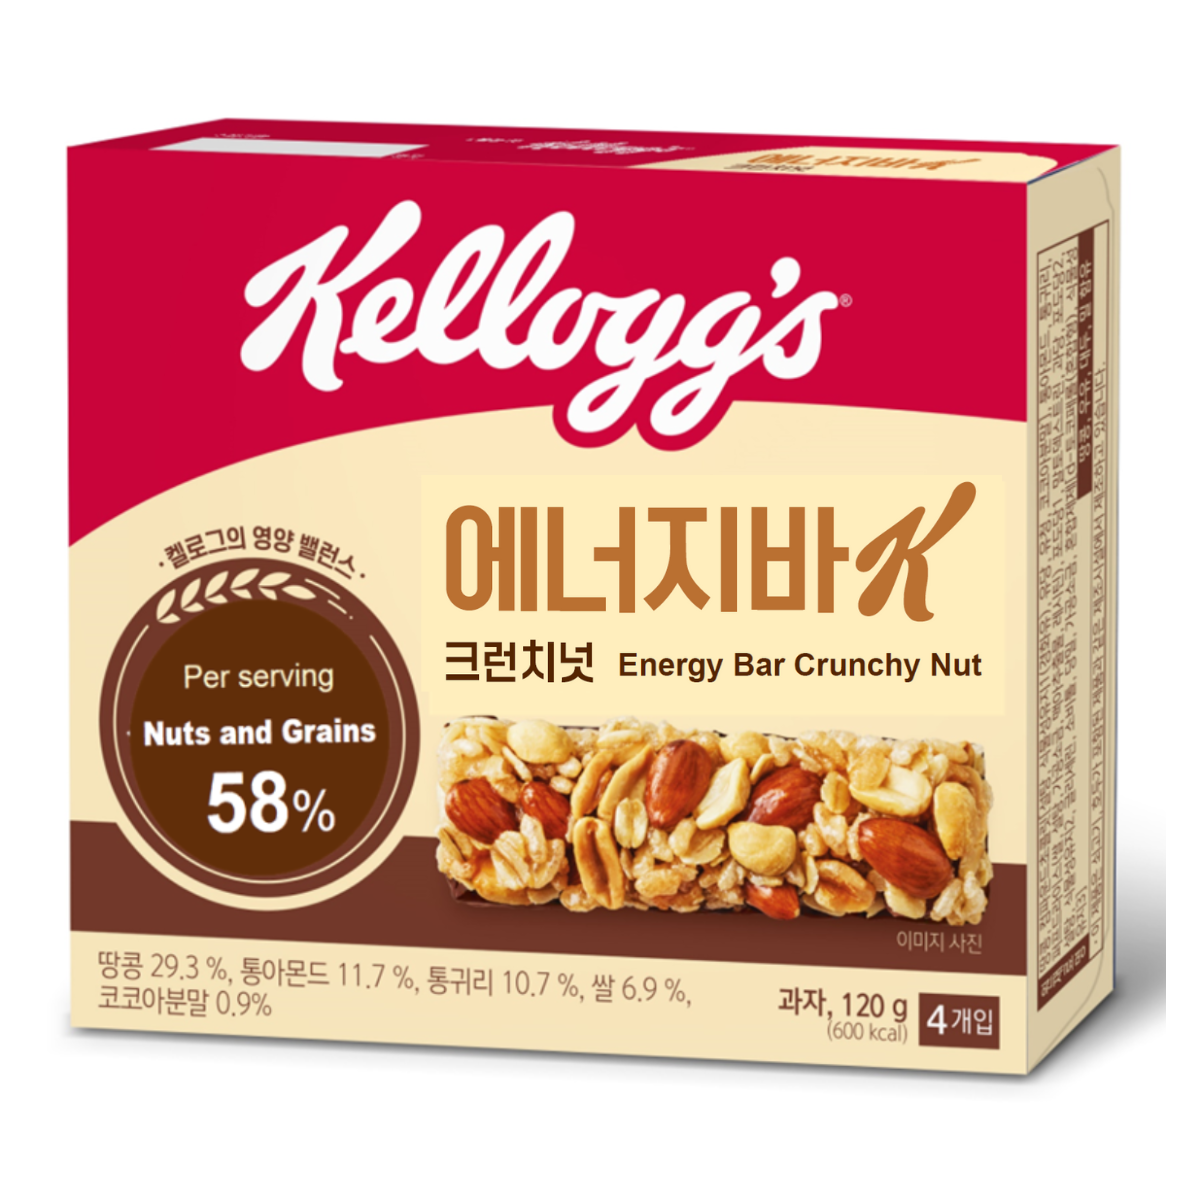 Energy Bar Crunchy Nut Kellogg's Malaysia